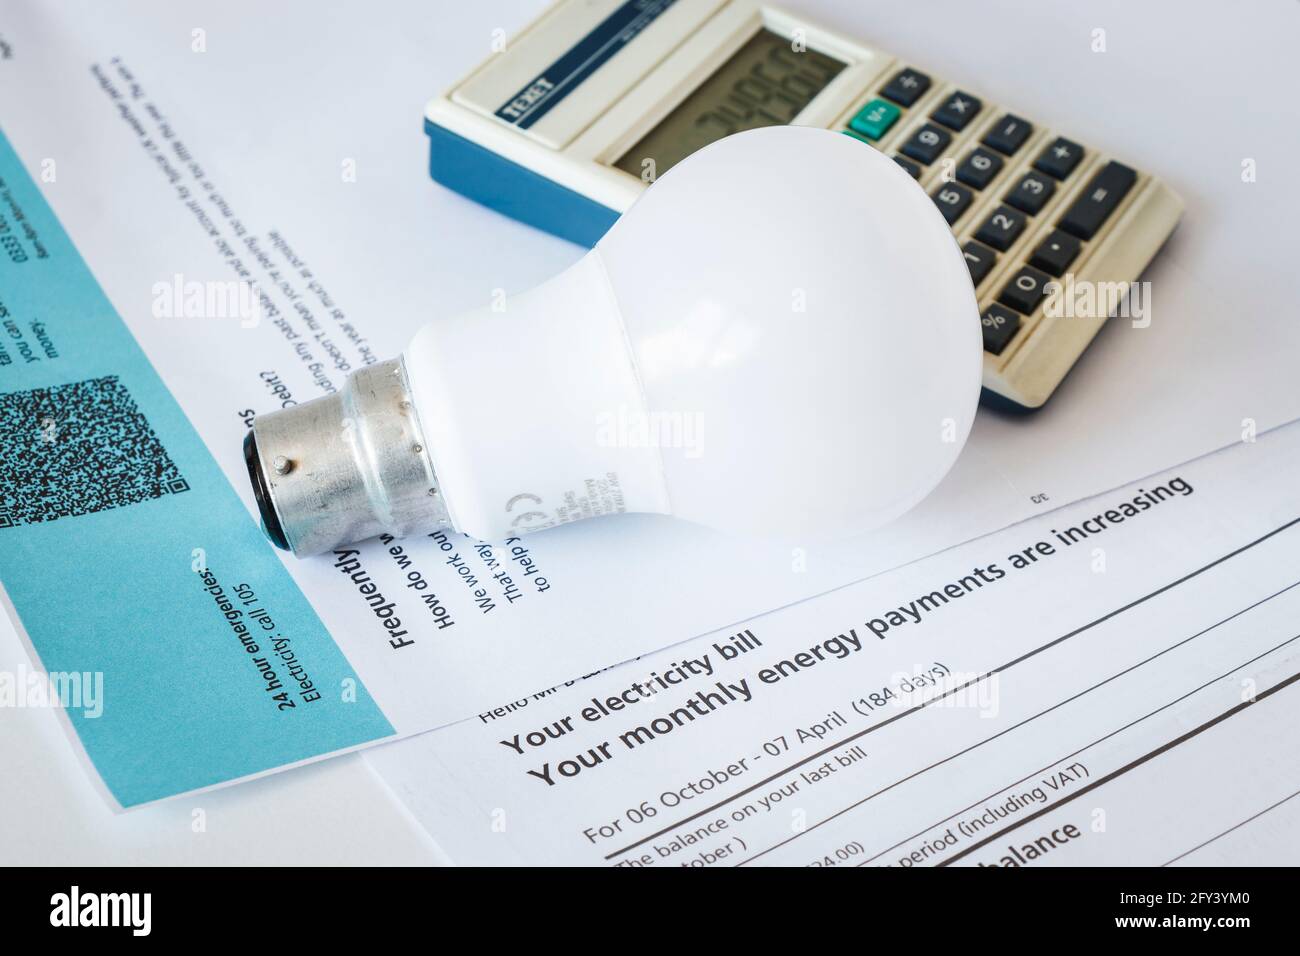 Immagine concettuale di una lampadina e di una calcolatrice elettrica con attacco a baionetta su una bolletta elettrica che notifica un aumento delle spese Foto Stock